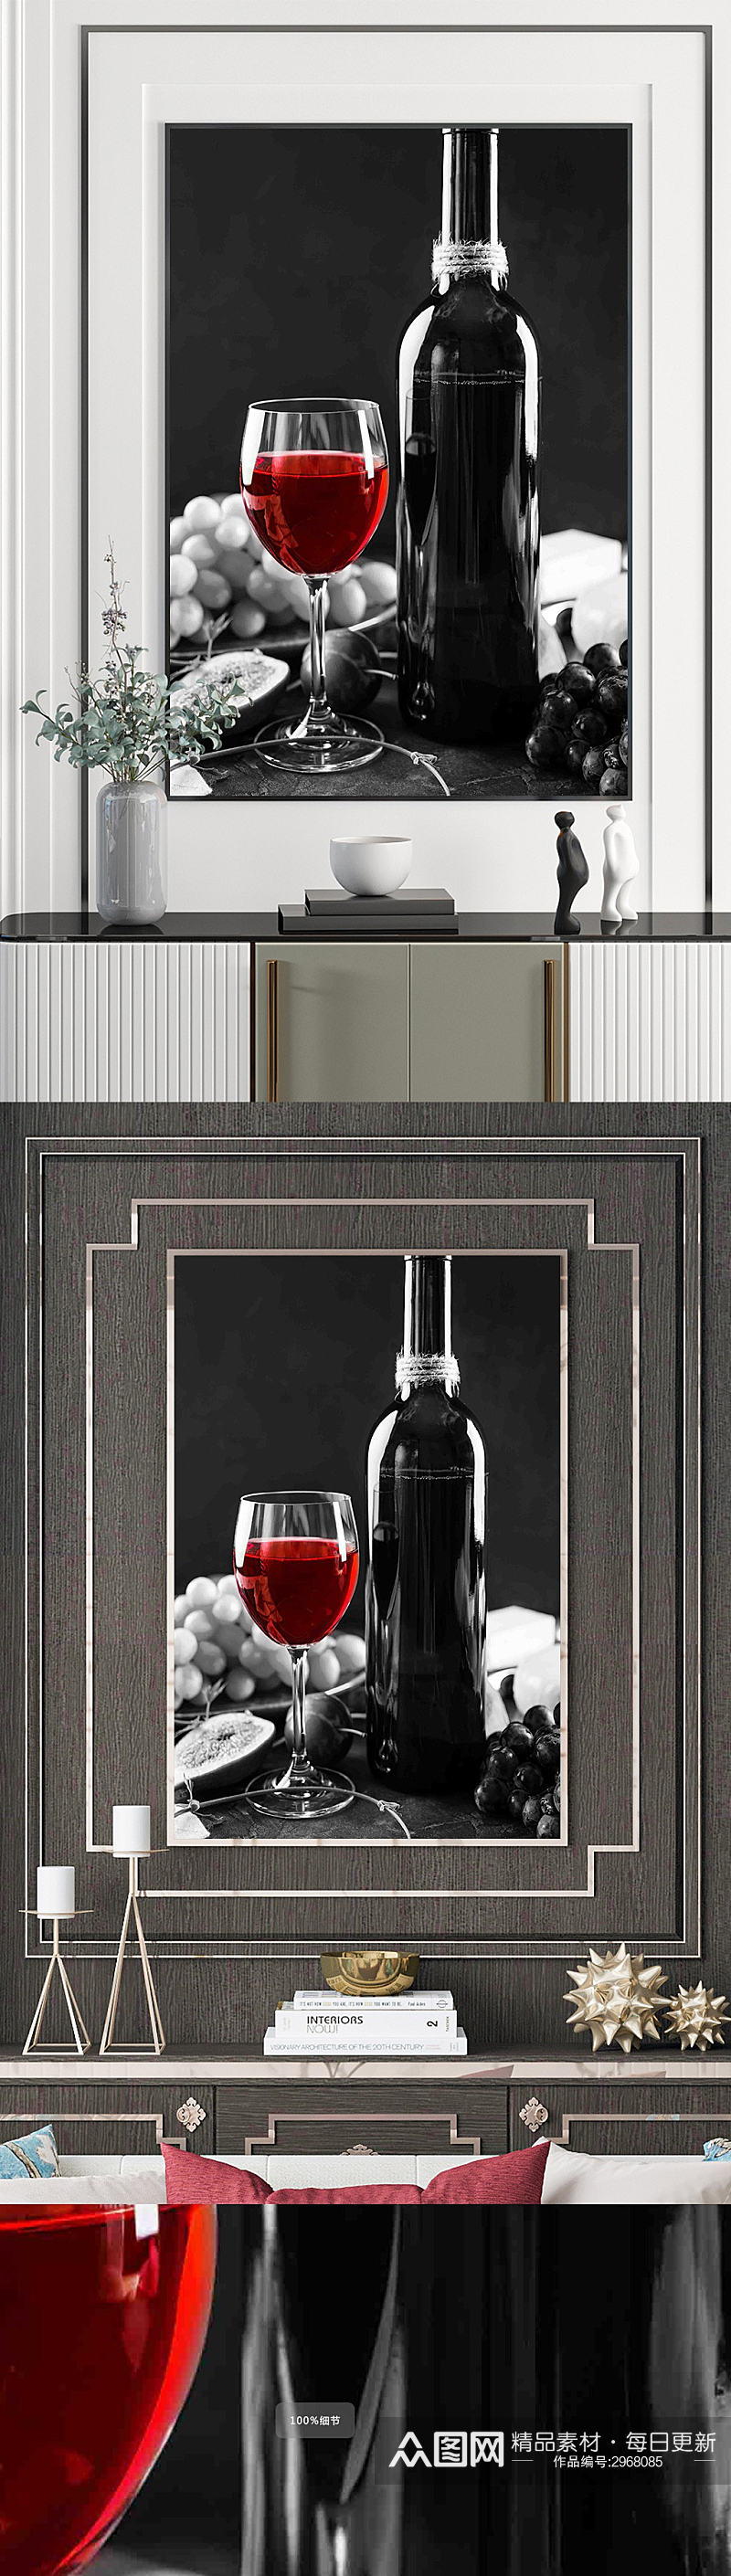 餐厅红酒酒杯装饰画素材